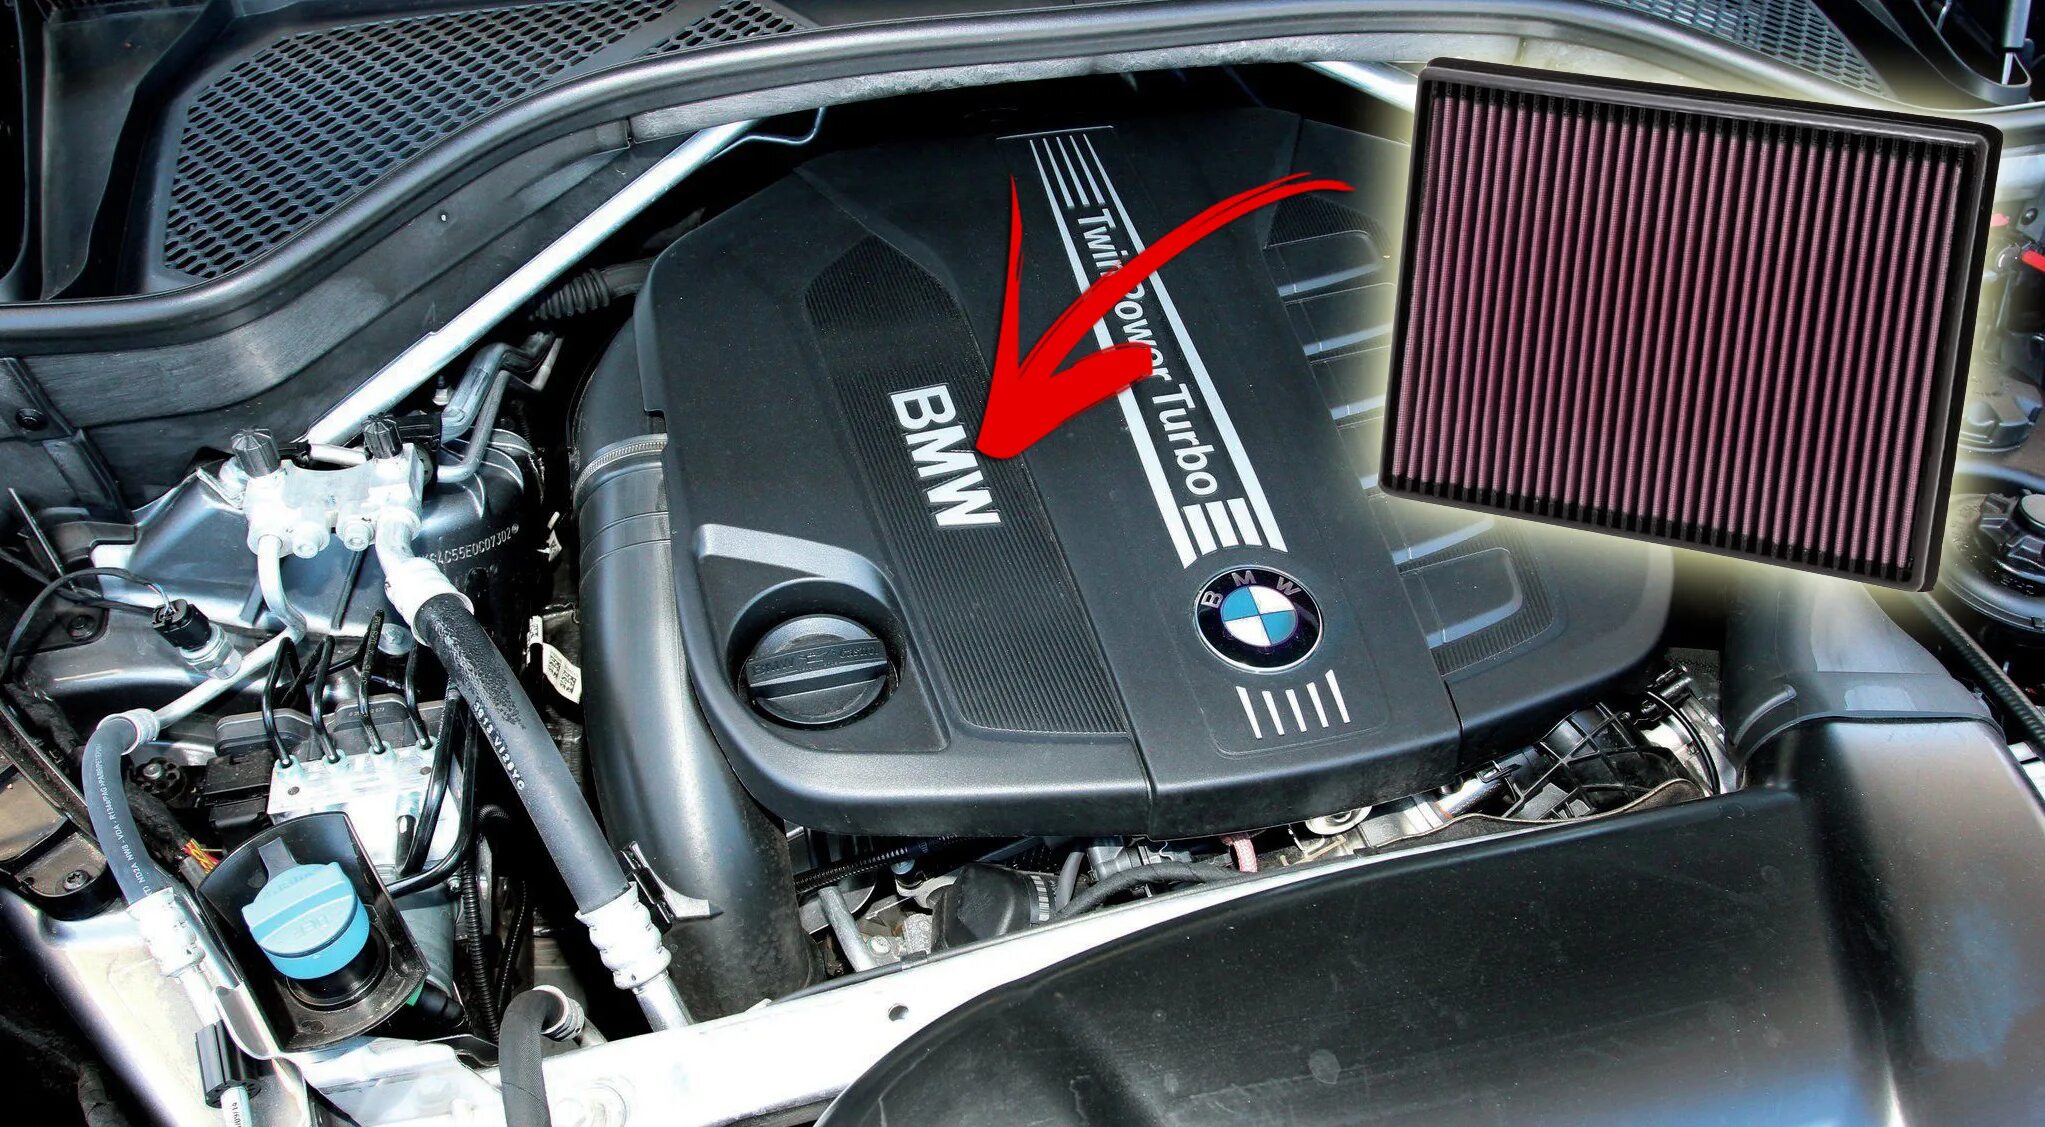 Воздушный фильтр дизельного двигателя. Фильтр воздушный БМВ х5 е70 3.0 дизель. Воздушный фильтр БМВ х5 е70 дизель. Воздушный фильтр БМВ х5 f15 дизель. Air Filter BMW x5 e70 30d.